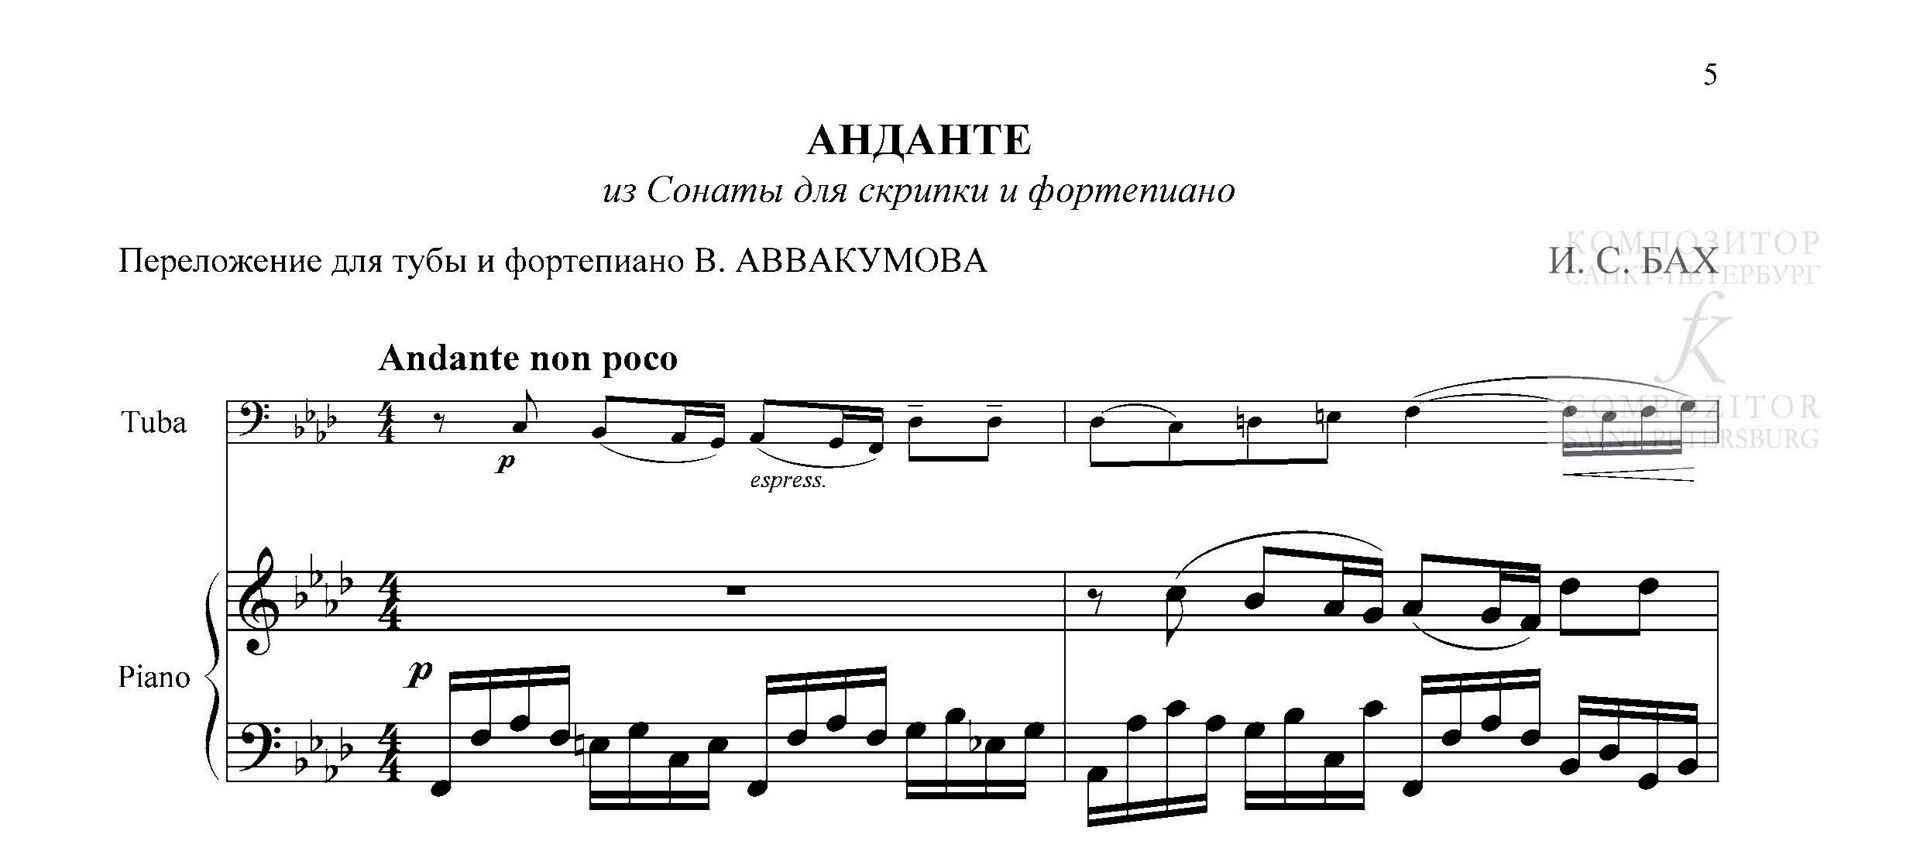 И. С. Бах. АНДАНТЕ. Из Сонаты для скрипки и фортепиано. Переложение для тубы и фортепиано.